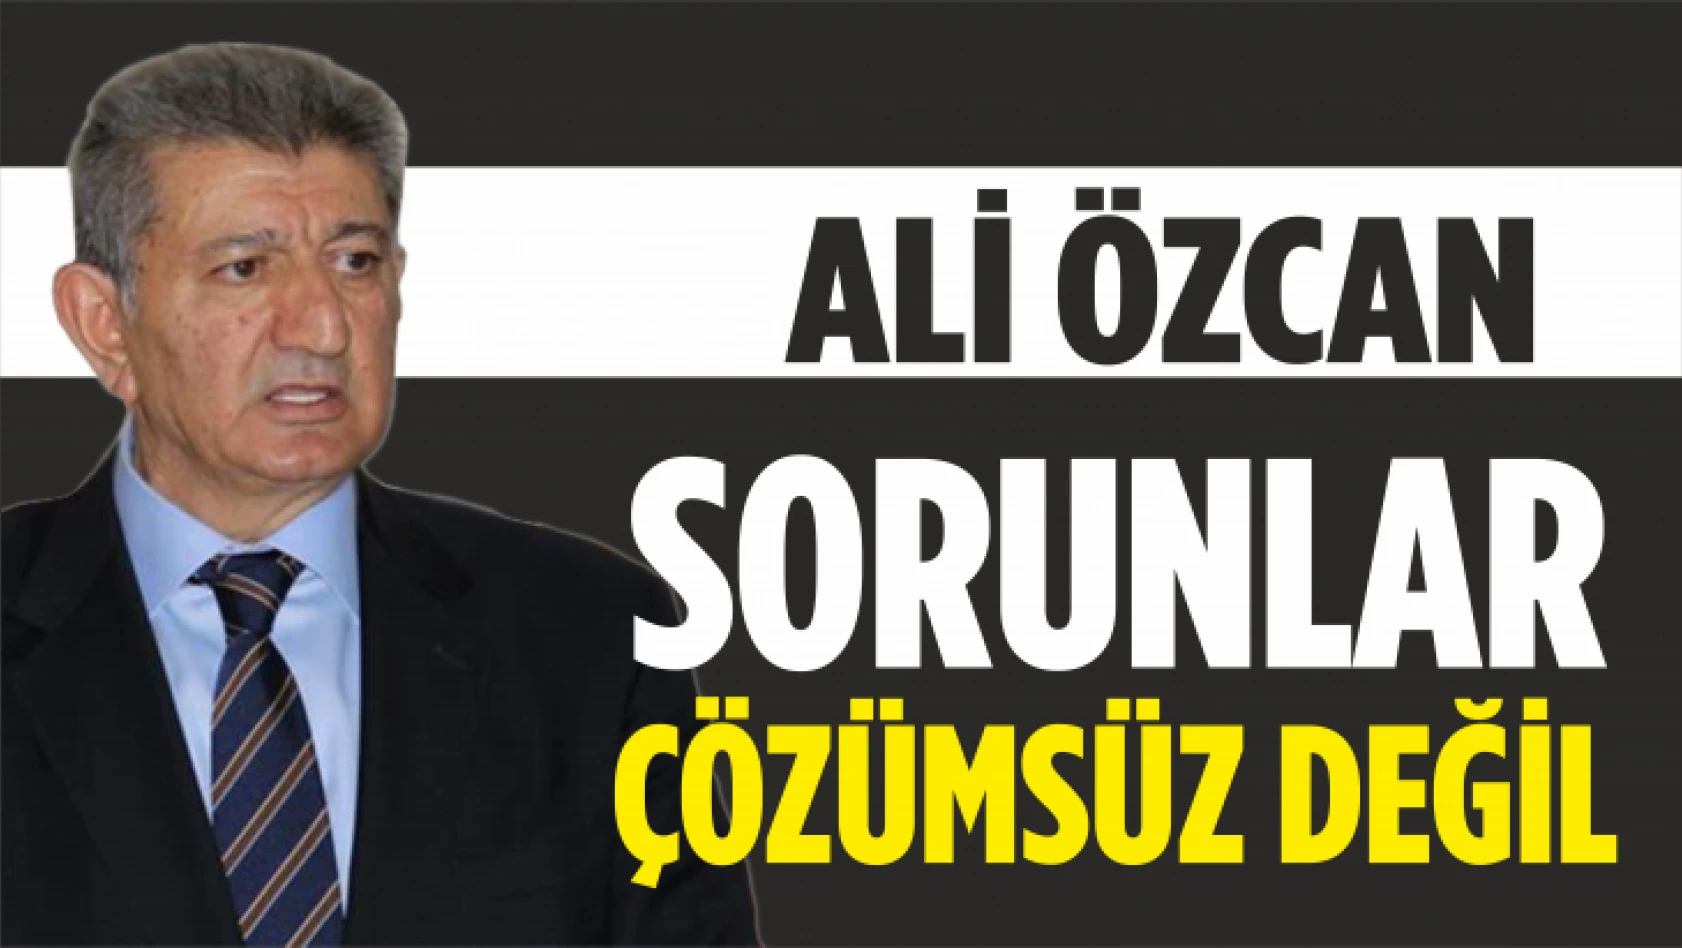 Ali Özcan, 'Sorunlar Çözümsüz Değil'